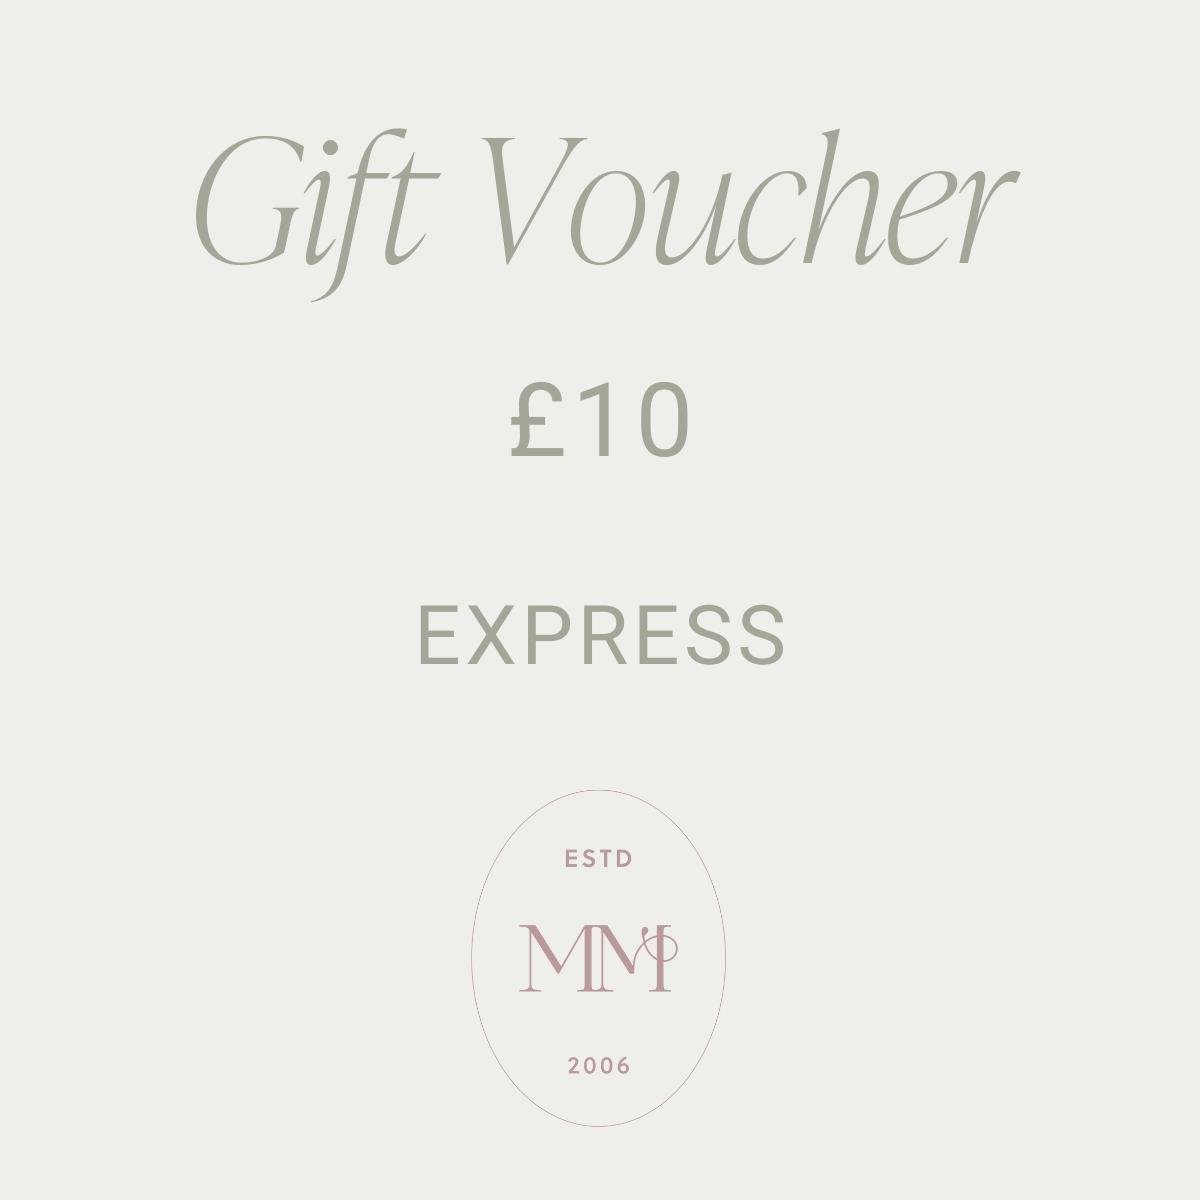 Gift Voucher £10.00 : EXPRESS